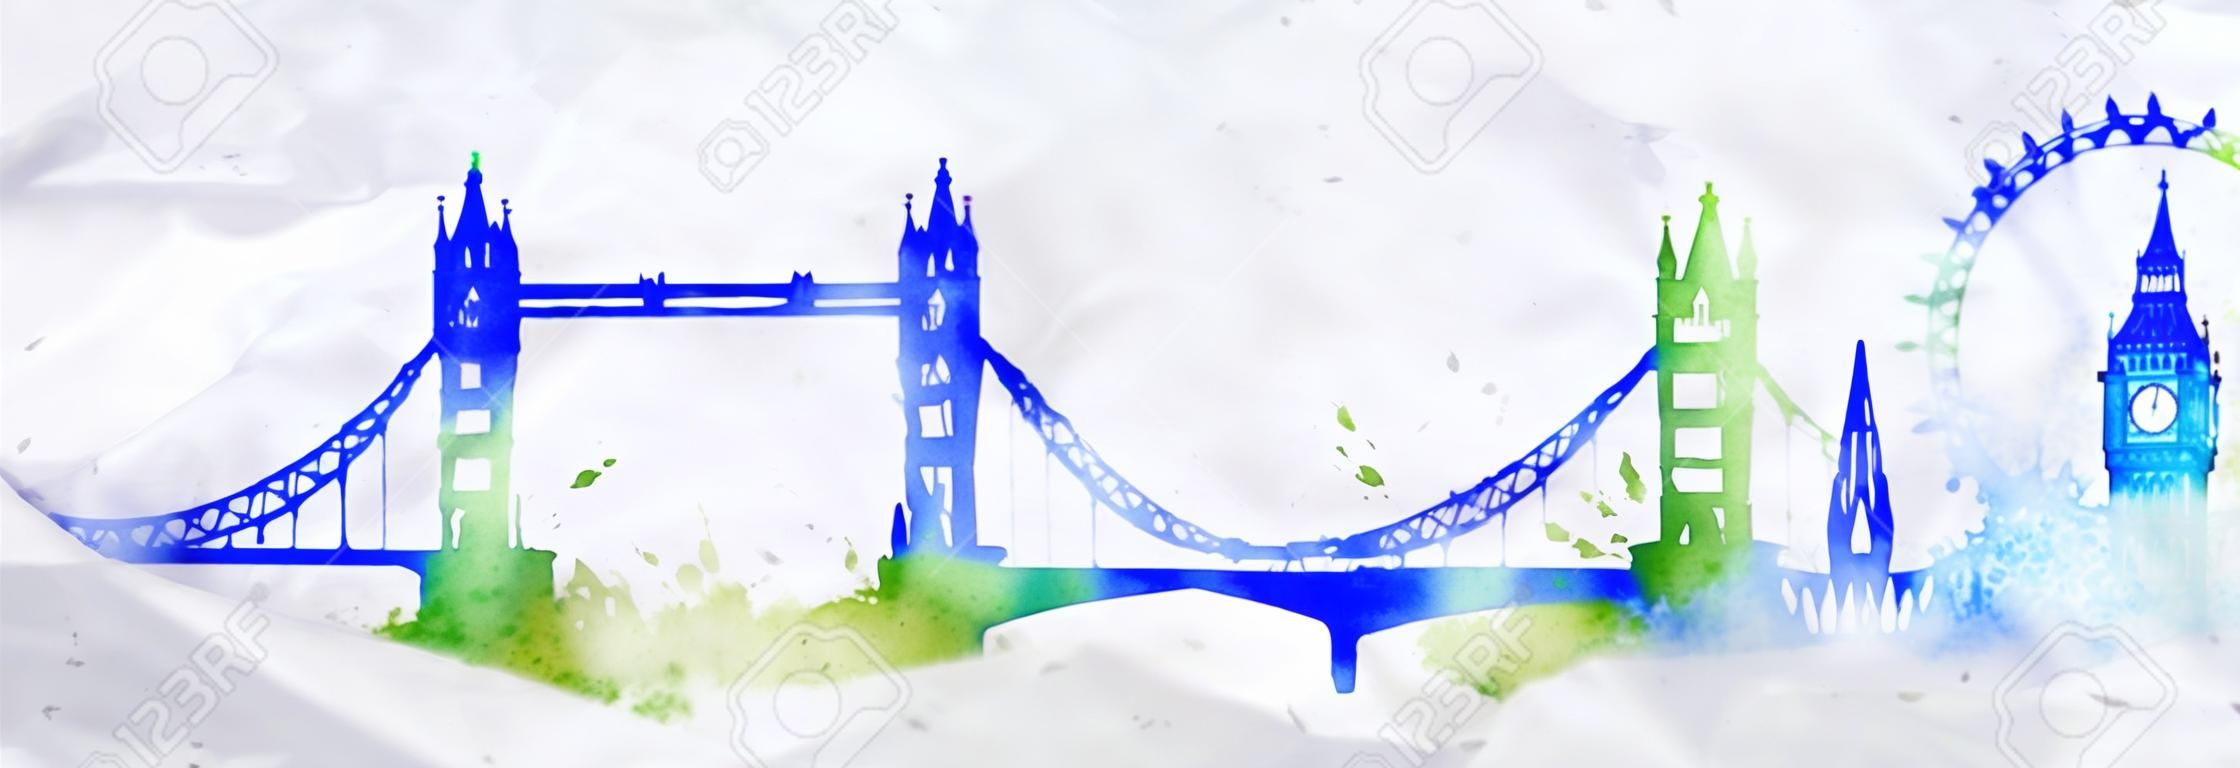 Silhouette Londres cidade pintada com respingos de gotas de aquarela estrias marcos com cores azul-verde